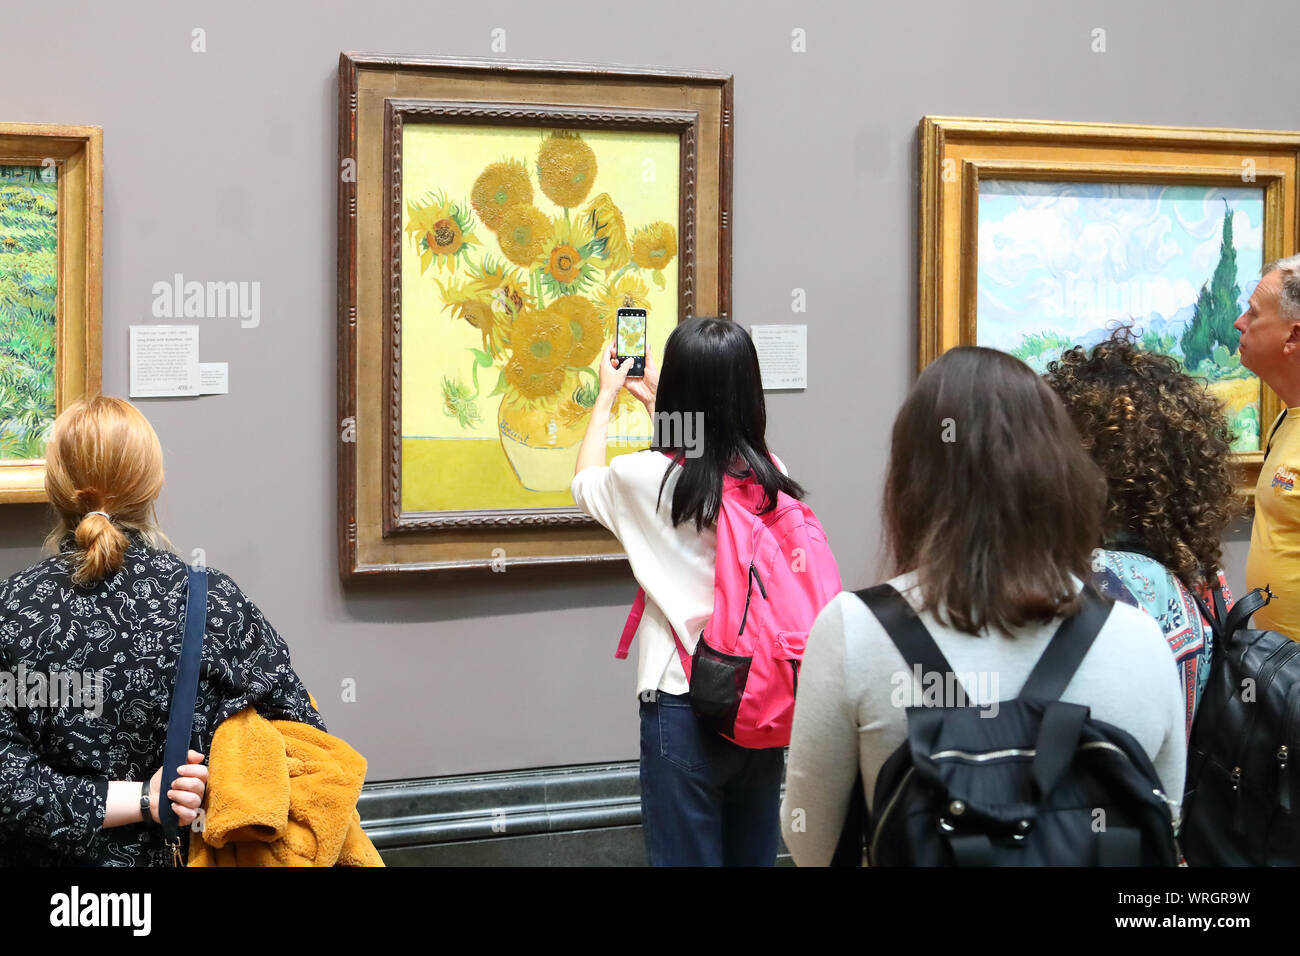 Jeune Femme prenant une photo de Vincent van Gogh tournesols avec son smartphone à la National Gallery, Londres, UK Banque D'Images